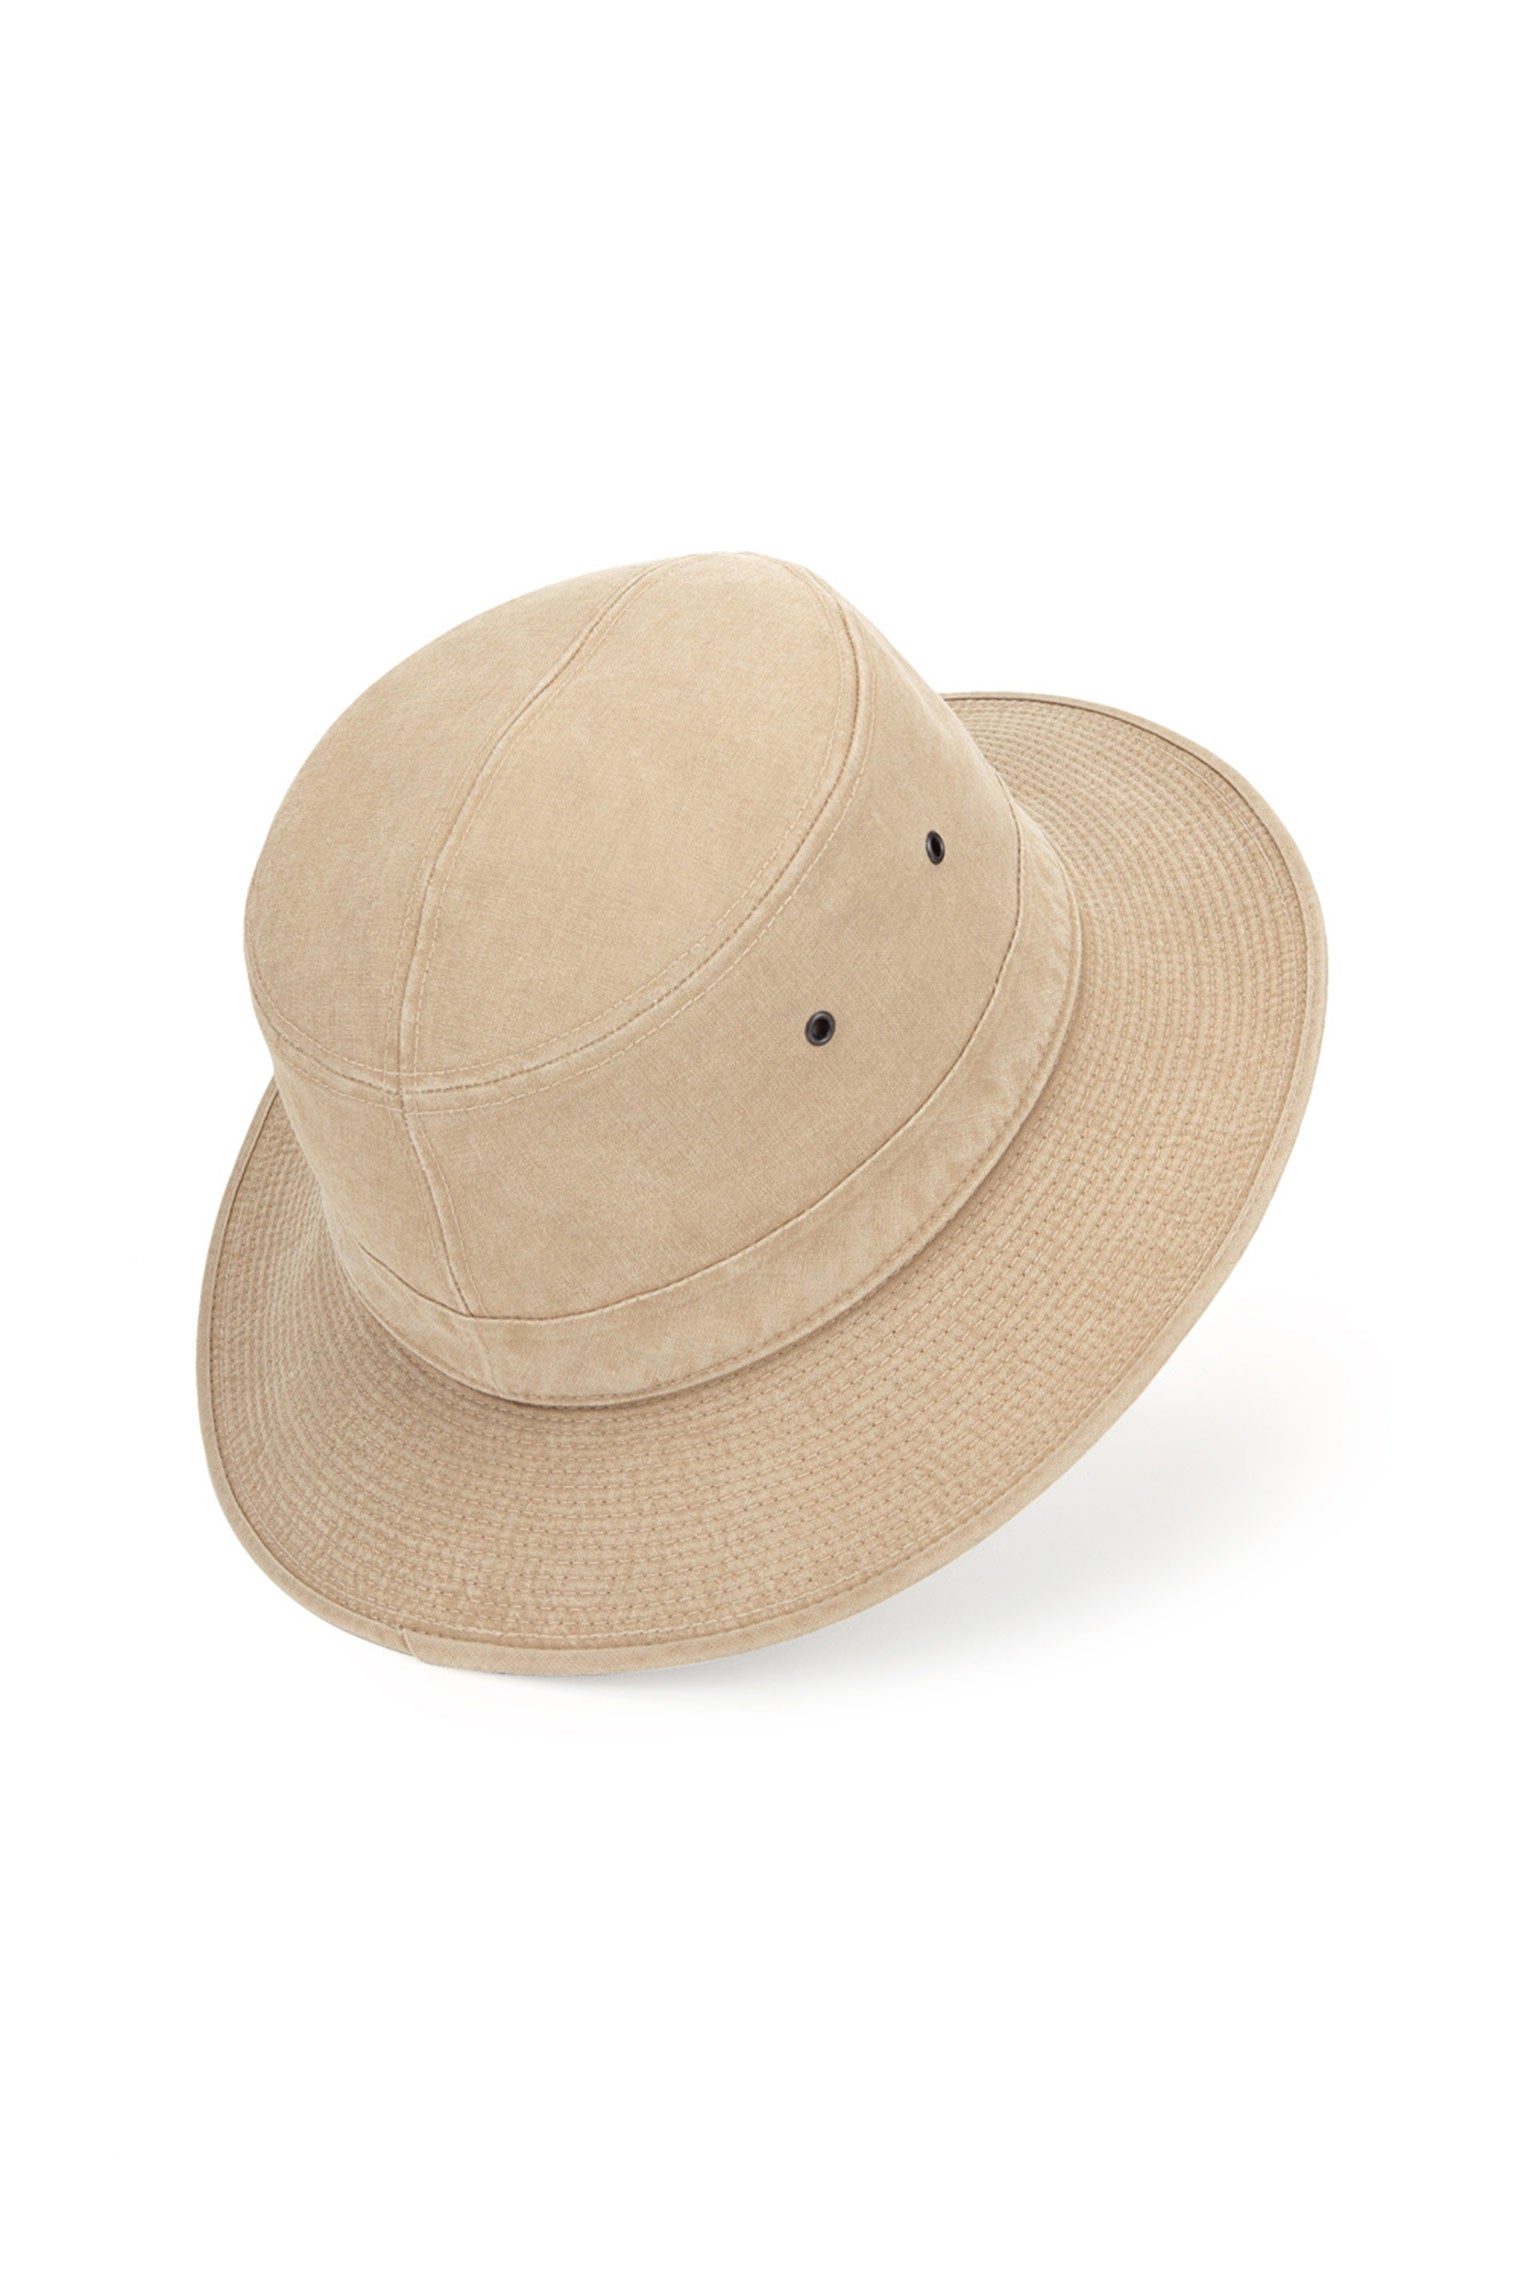 Capri Rollable Hat - Cotton & Linen Hats & Caps - Lock & Co. Hatters London UK